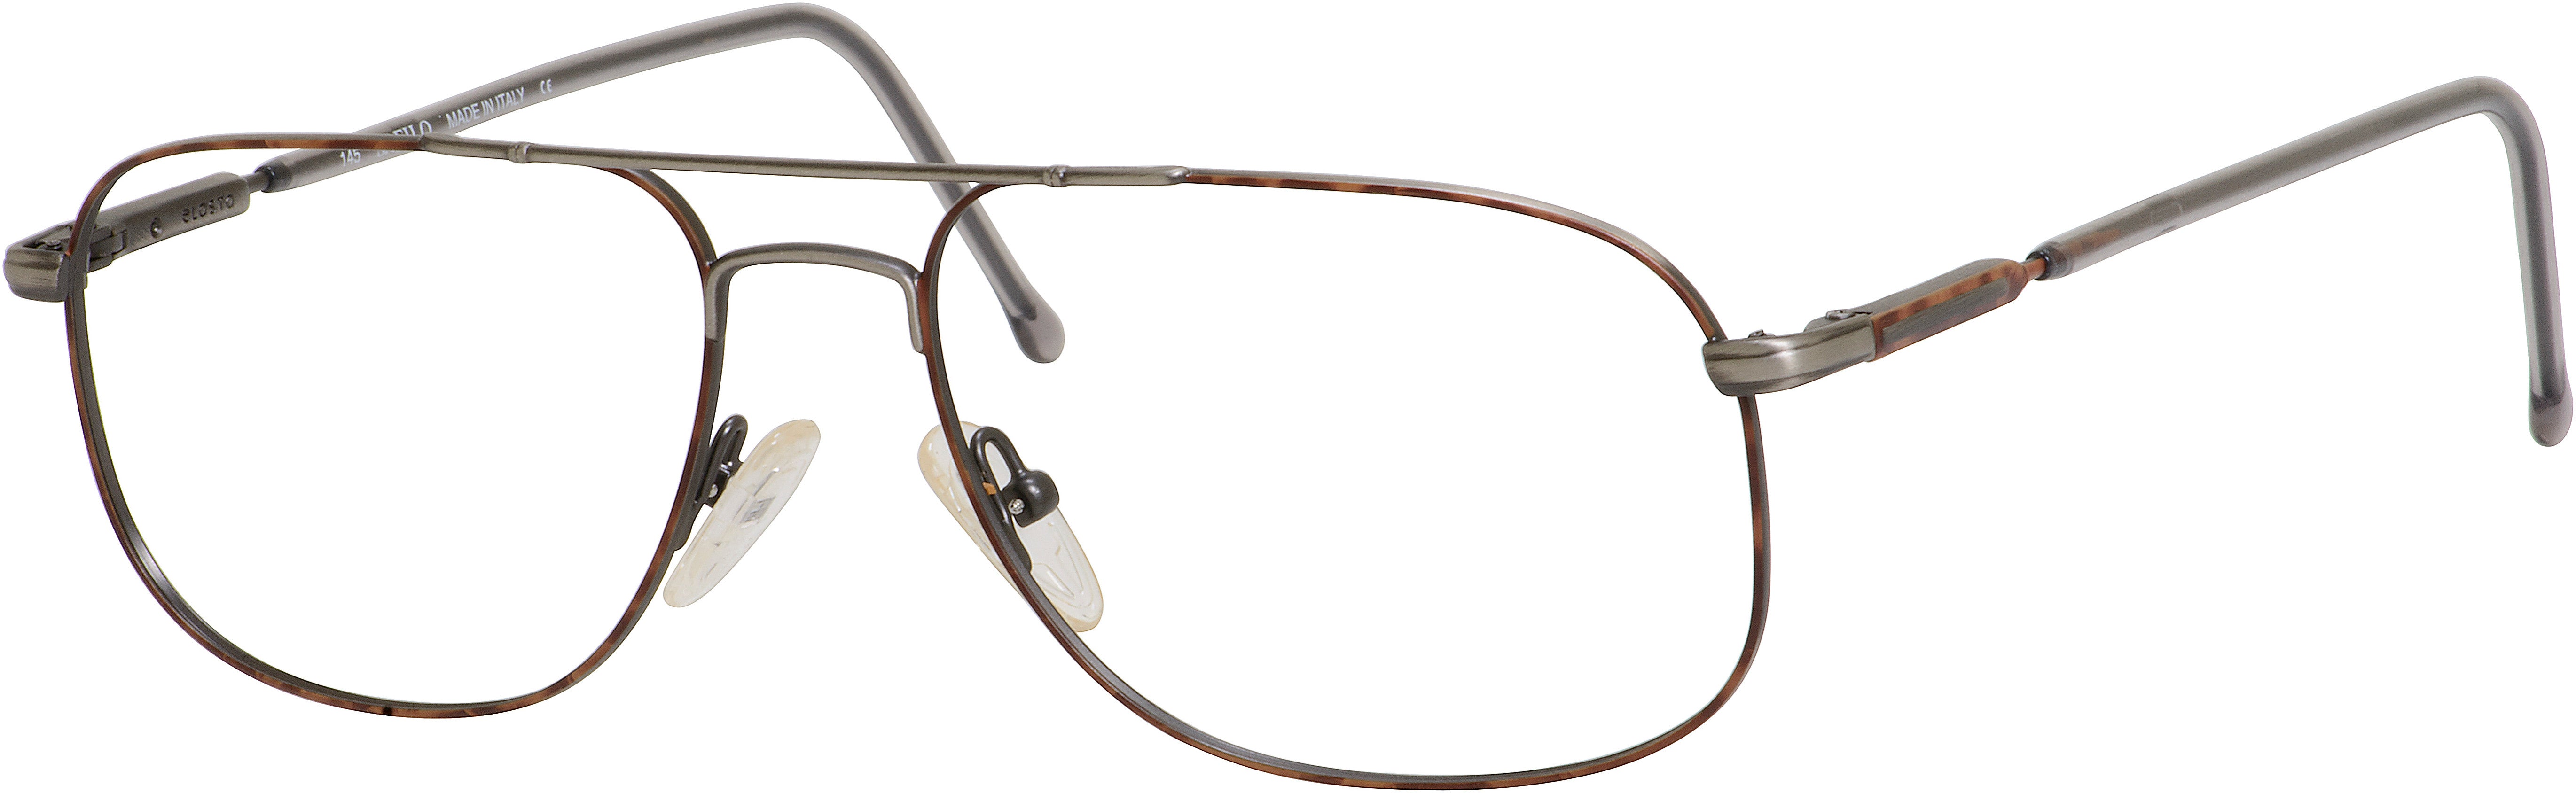  Elasta 7020 Rectangular Eyeglasses 0LV8-0LV8  Antique Matte (00 Demo Lens)